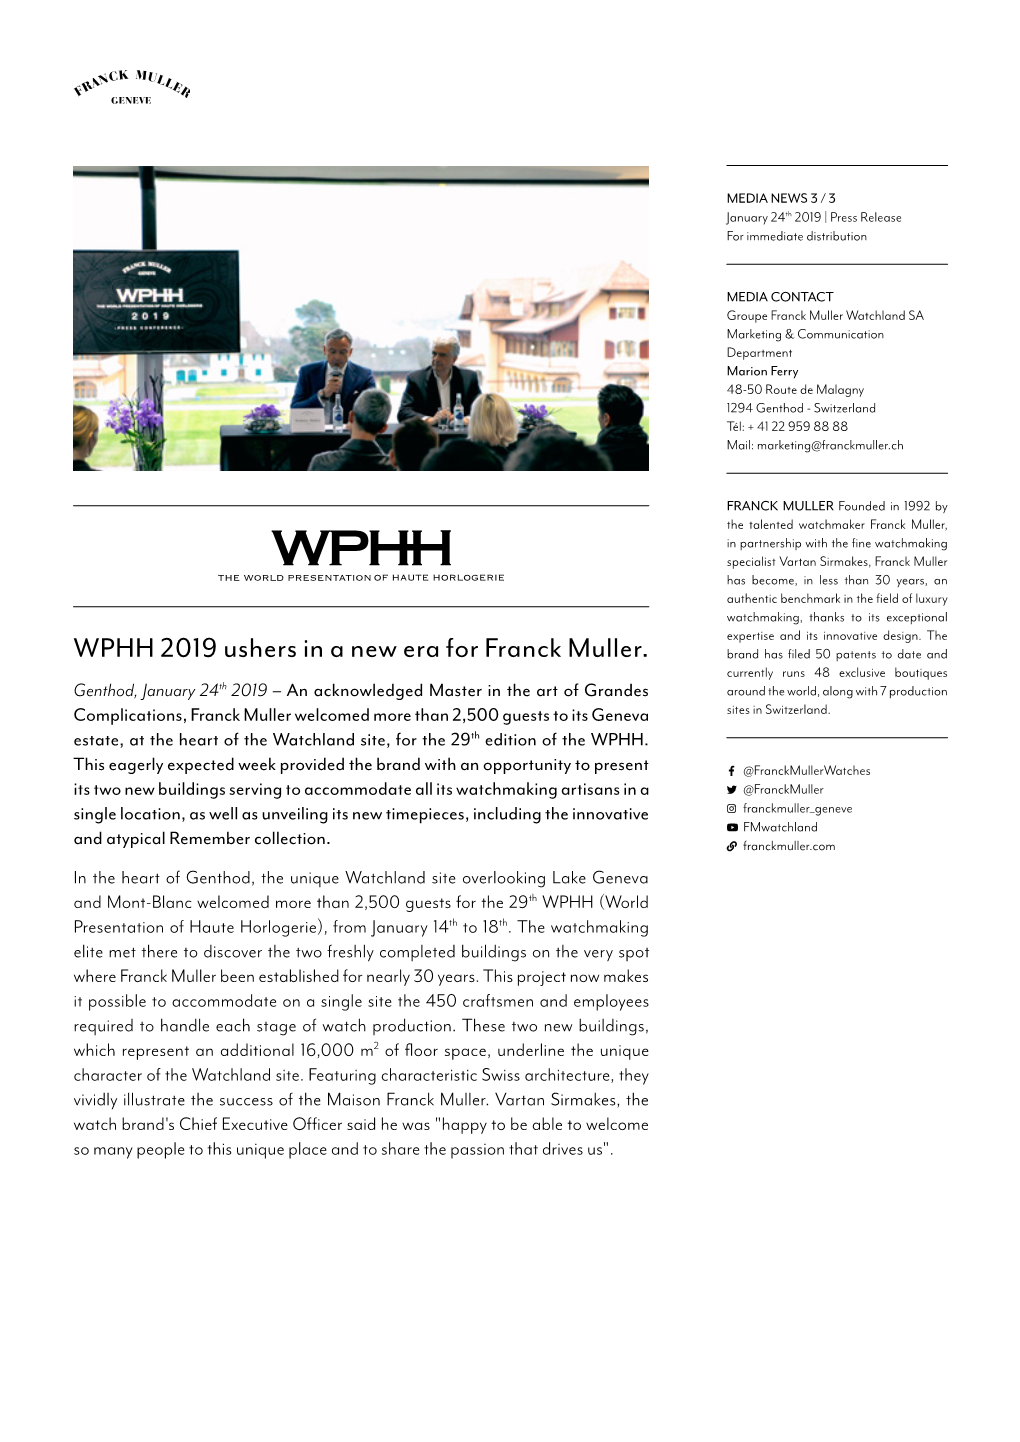 WPHH 2019 Ushers in a New Era for Franck Muller